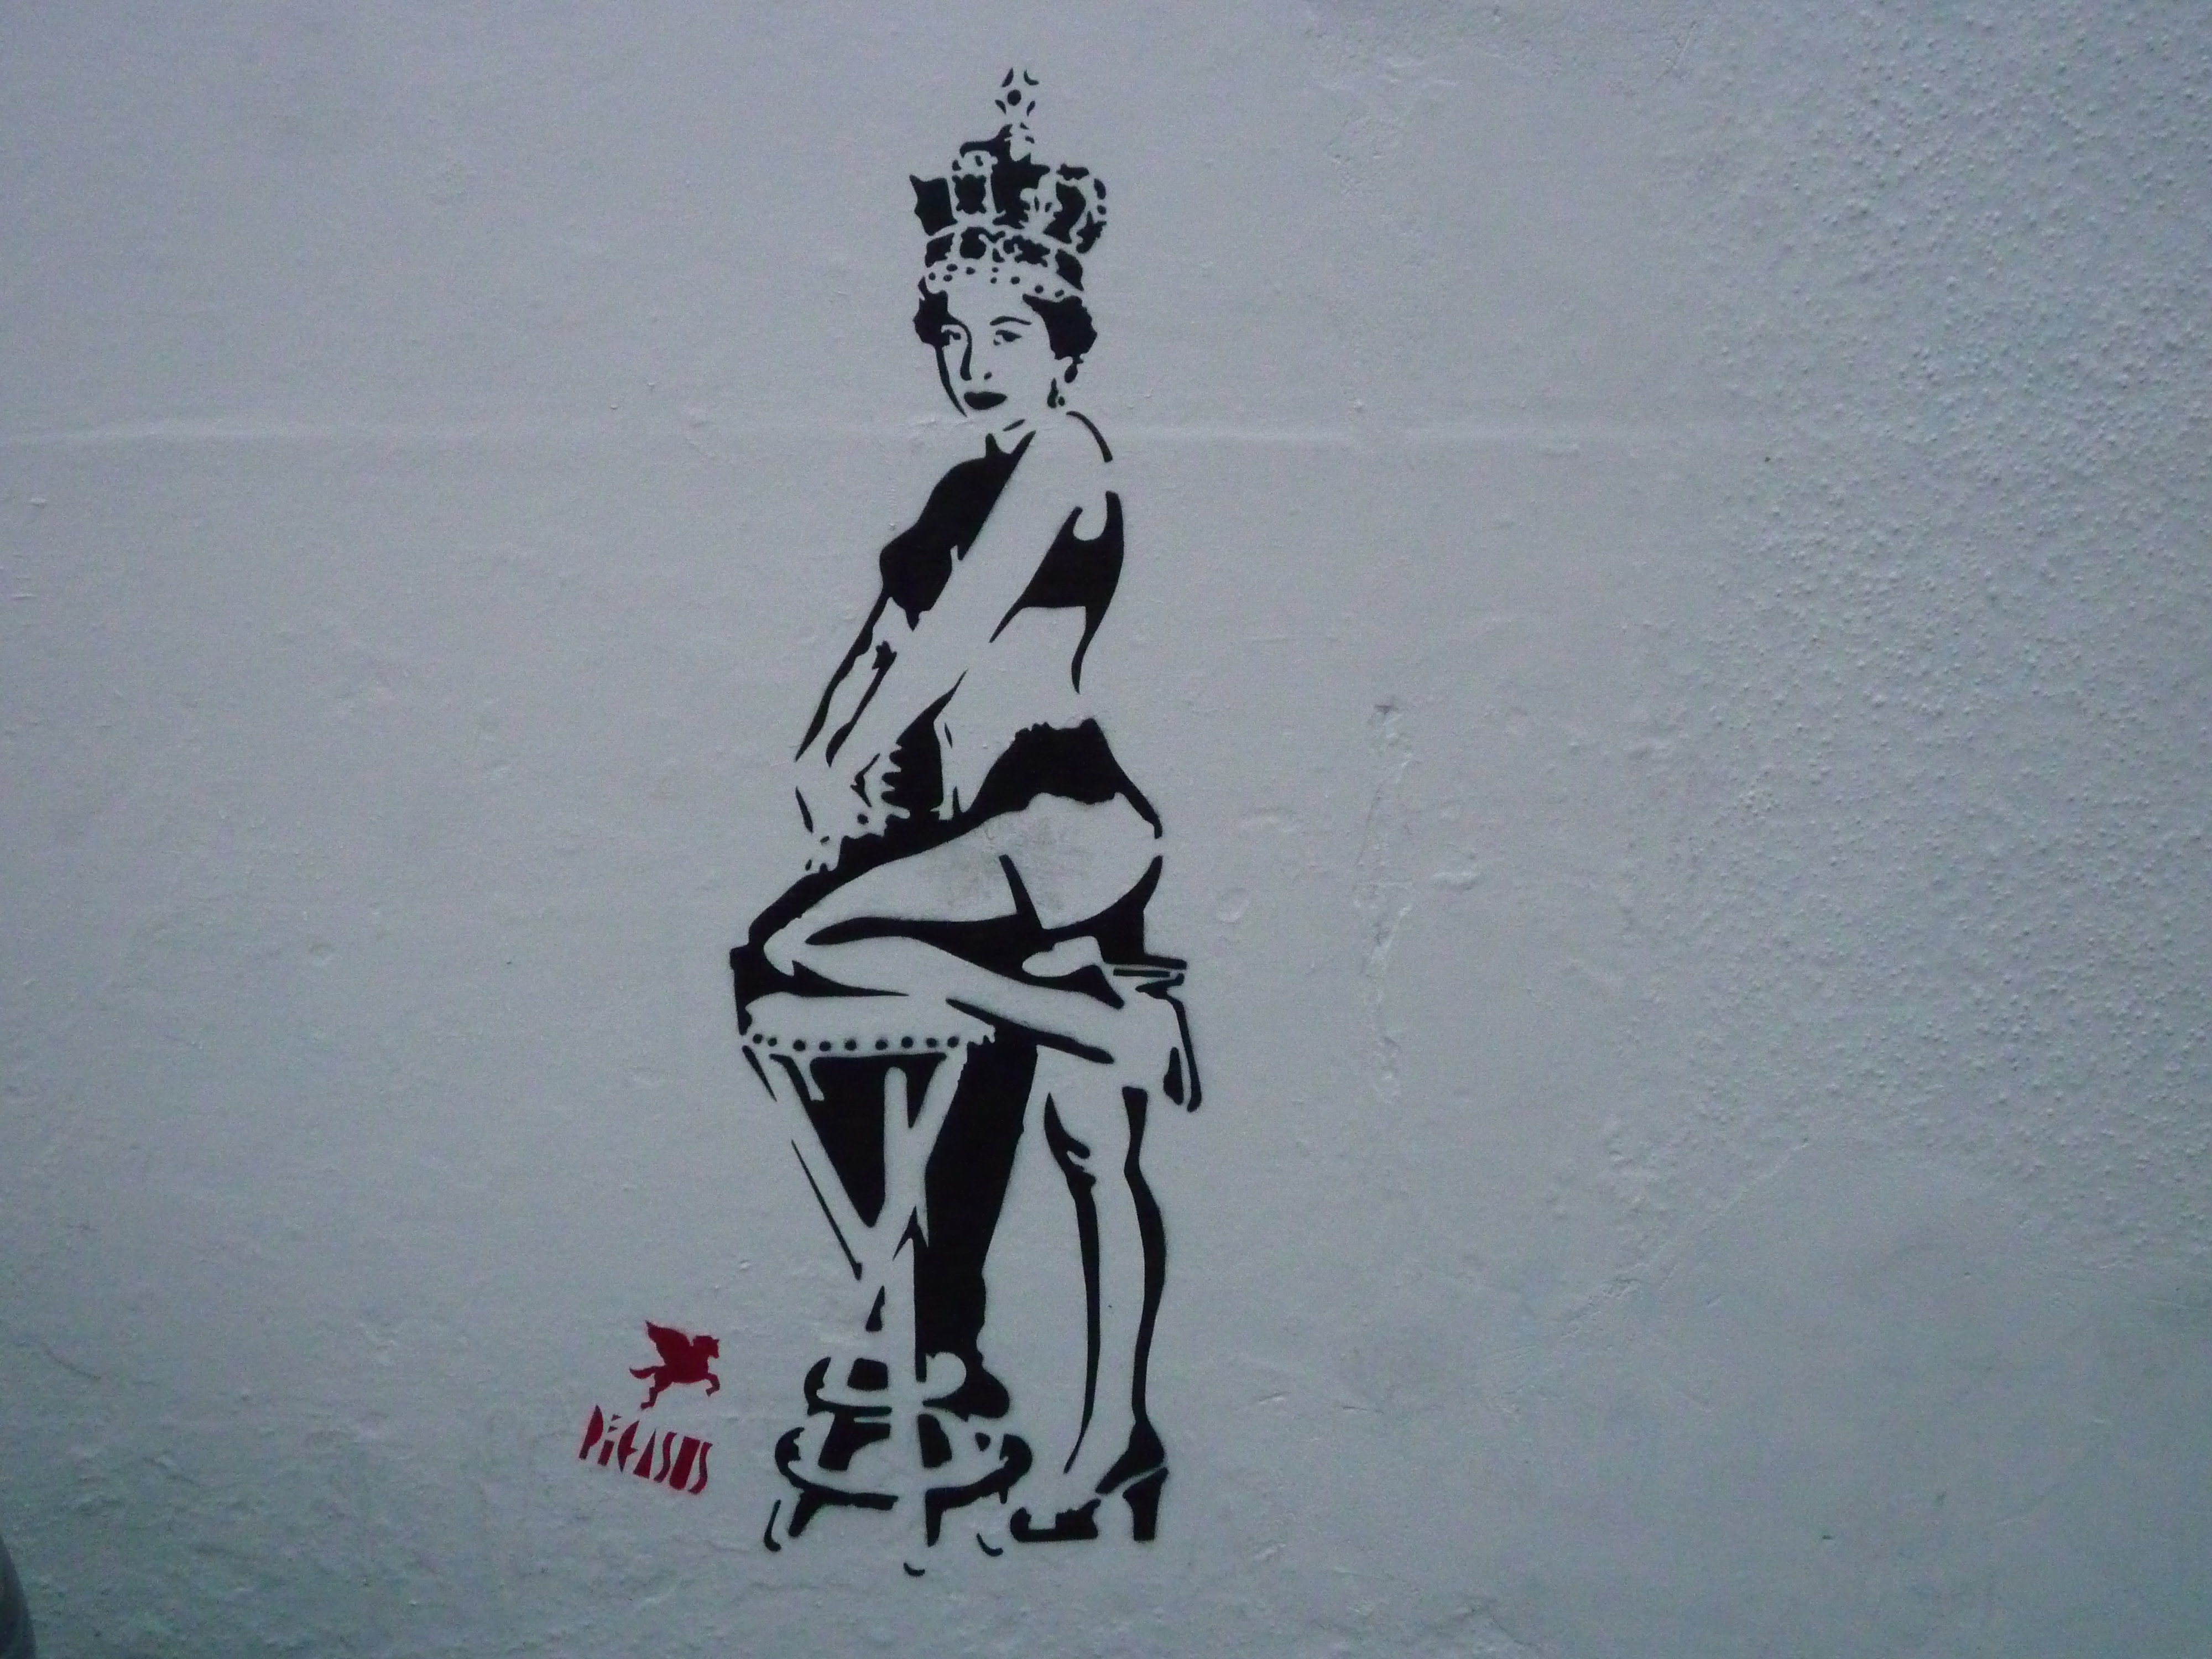 Street Art in London - portrait 5